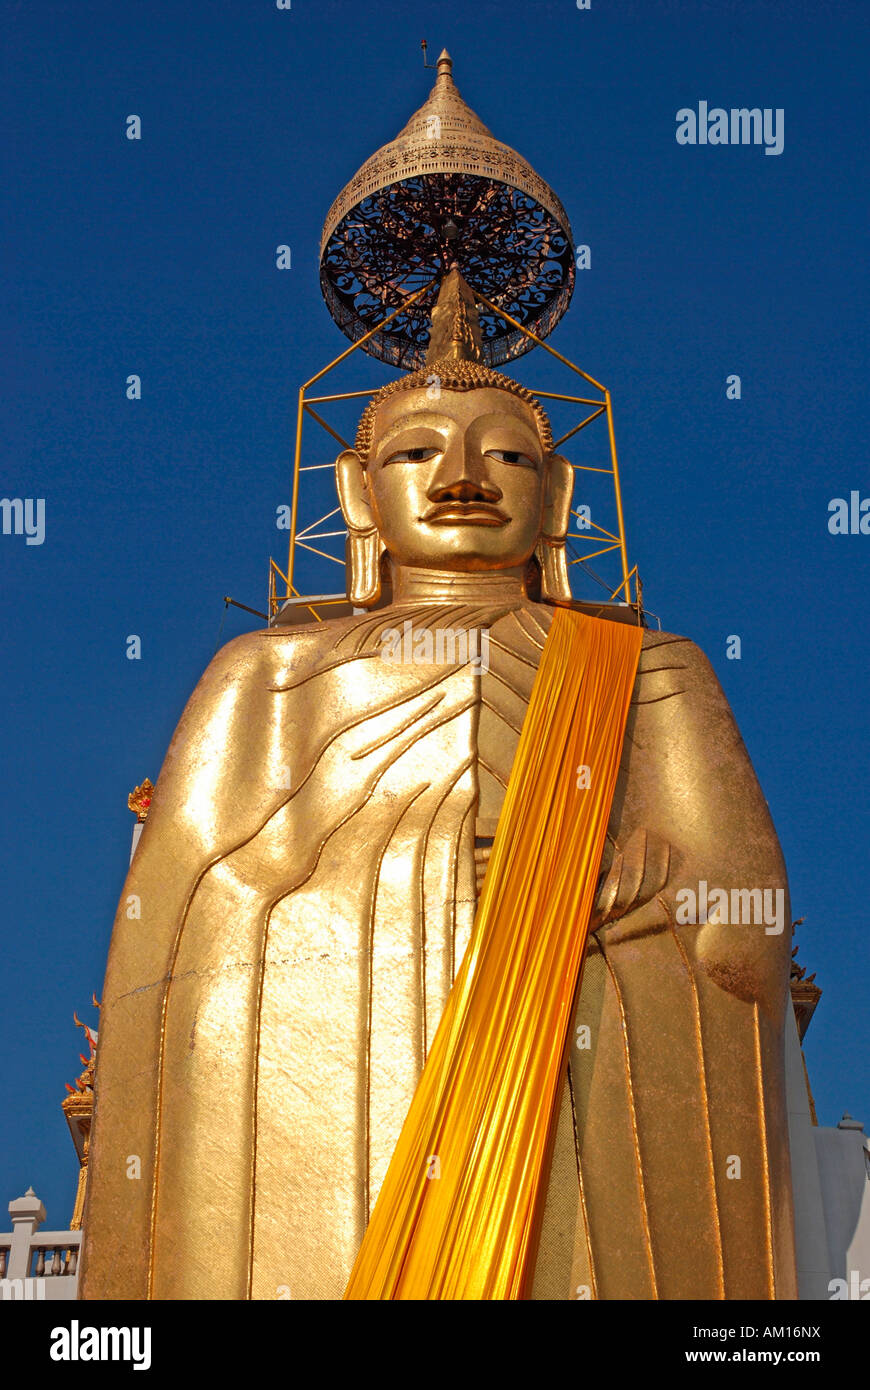 32 m high buddha, Wat Intharawihan, Bangkok, Thailand Stock Photo